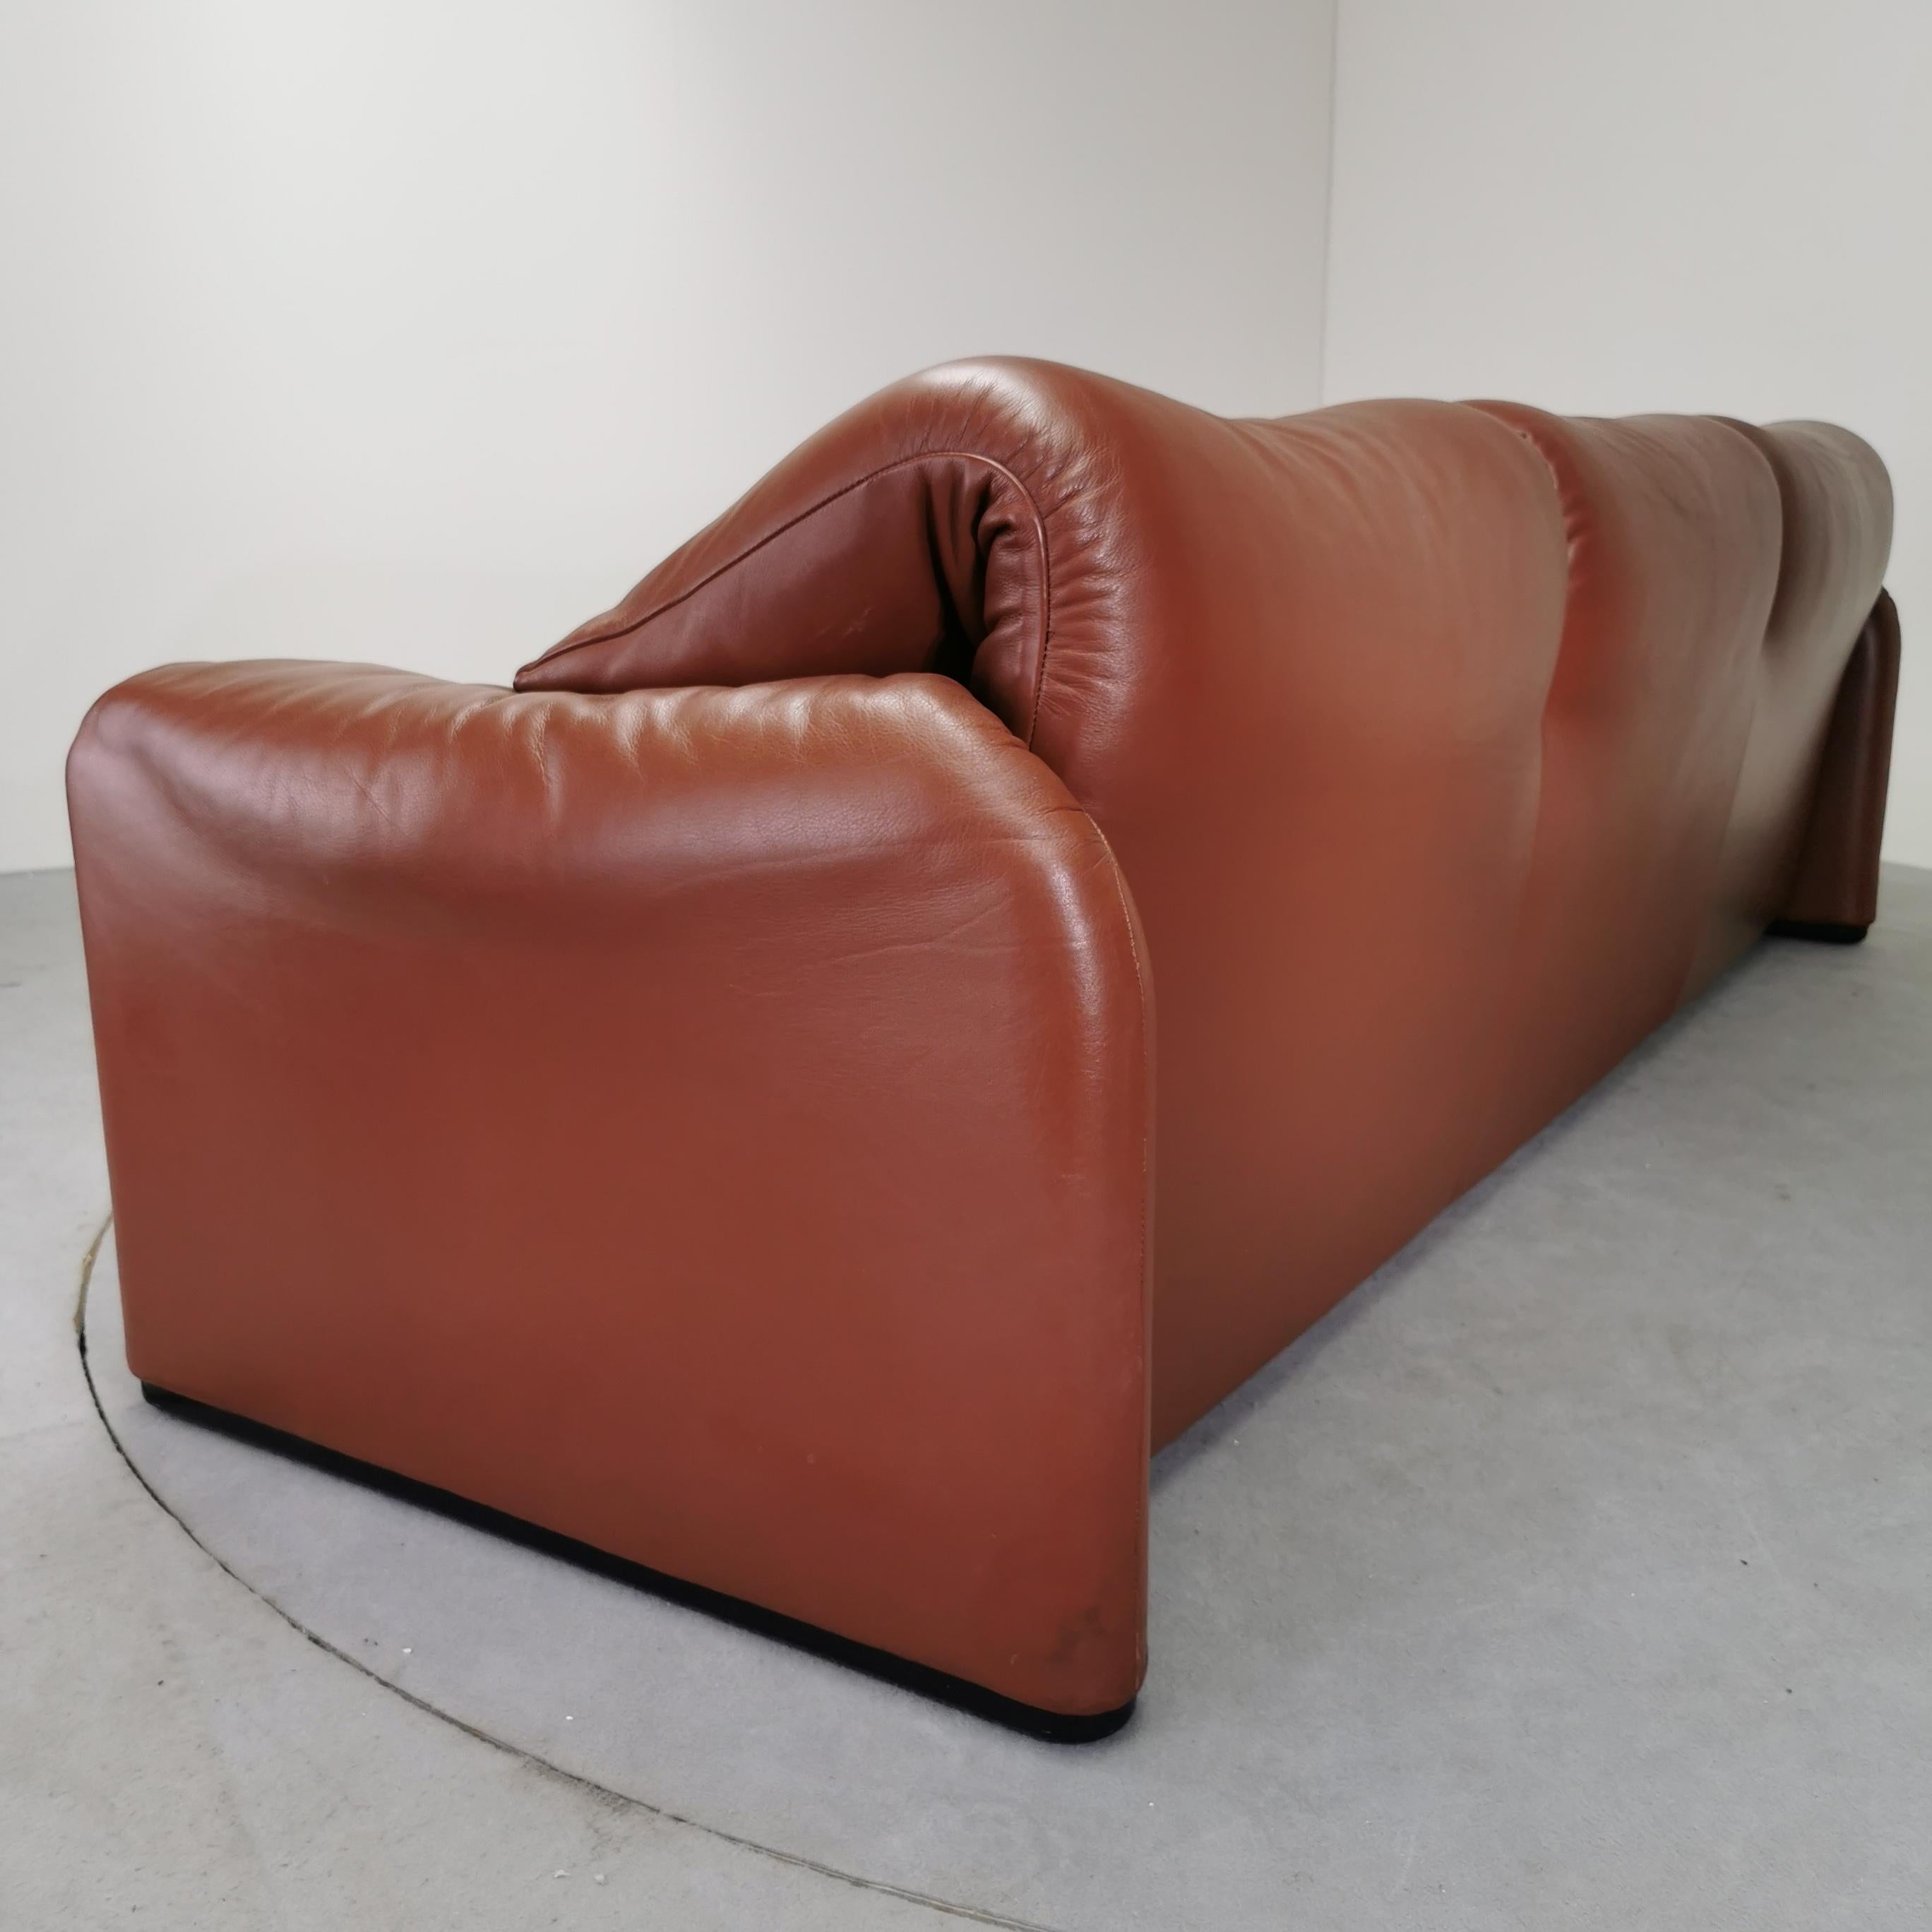 Italian Maralunga sofa Cassina 70's leather For Sale